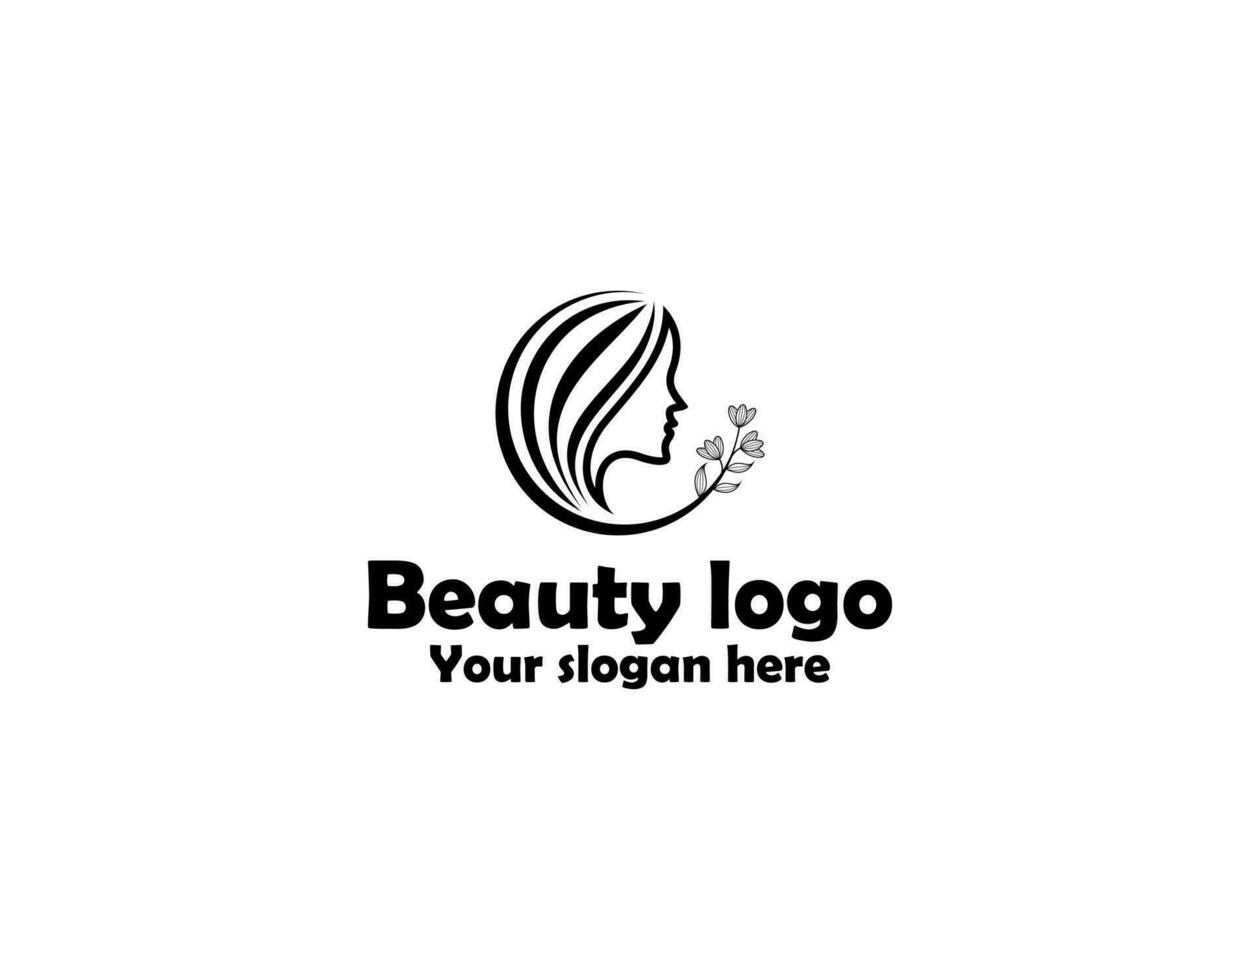 skönhet kvinna logotyp design med cirkel märke vektor